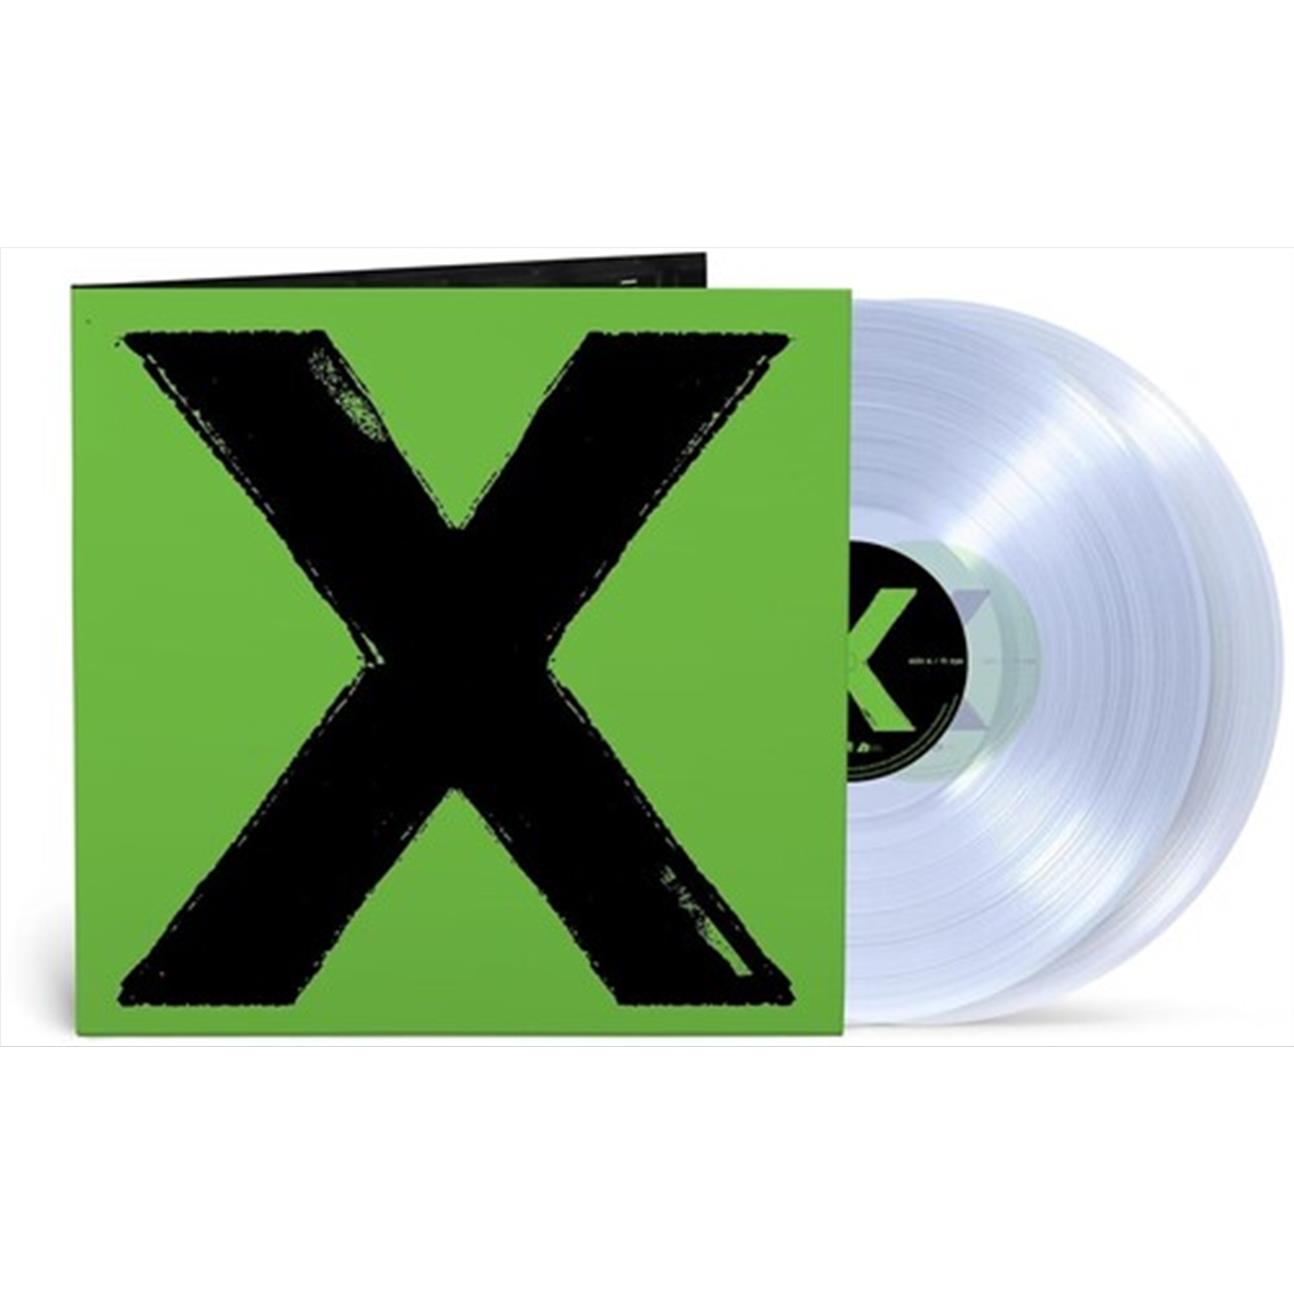 x (multiply) (crystal clear vinyl)